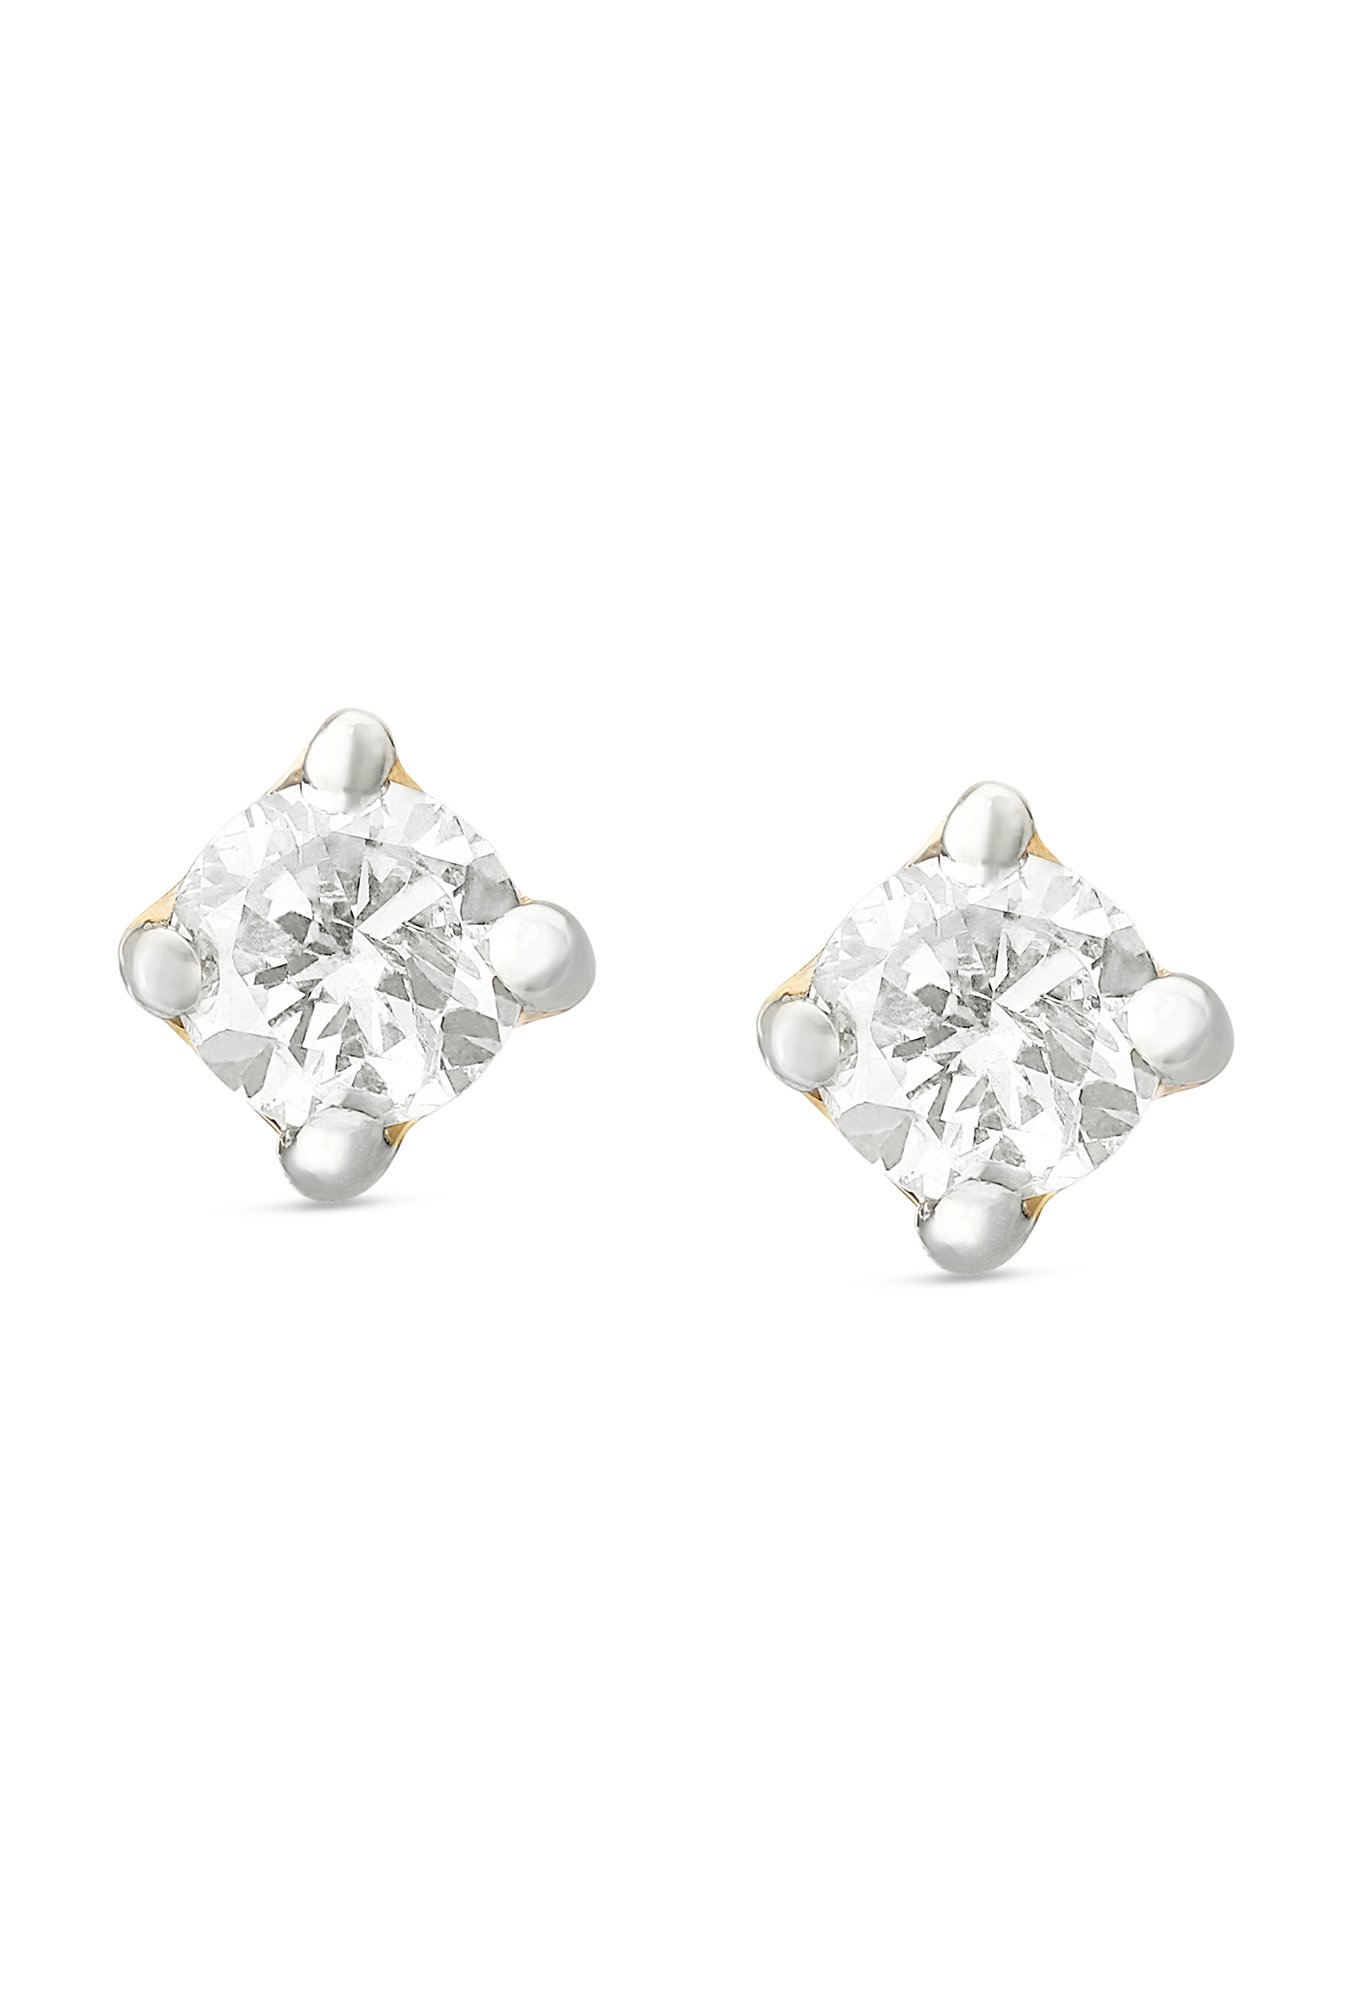 Buy Tanishq 18k Gold Diamond Earrings Online At Best Price